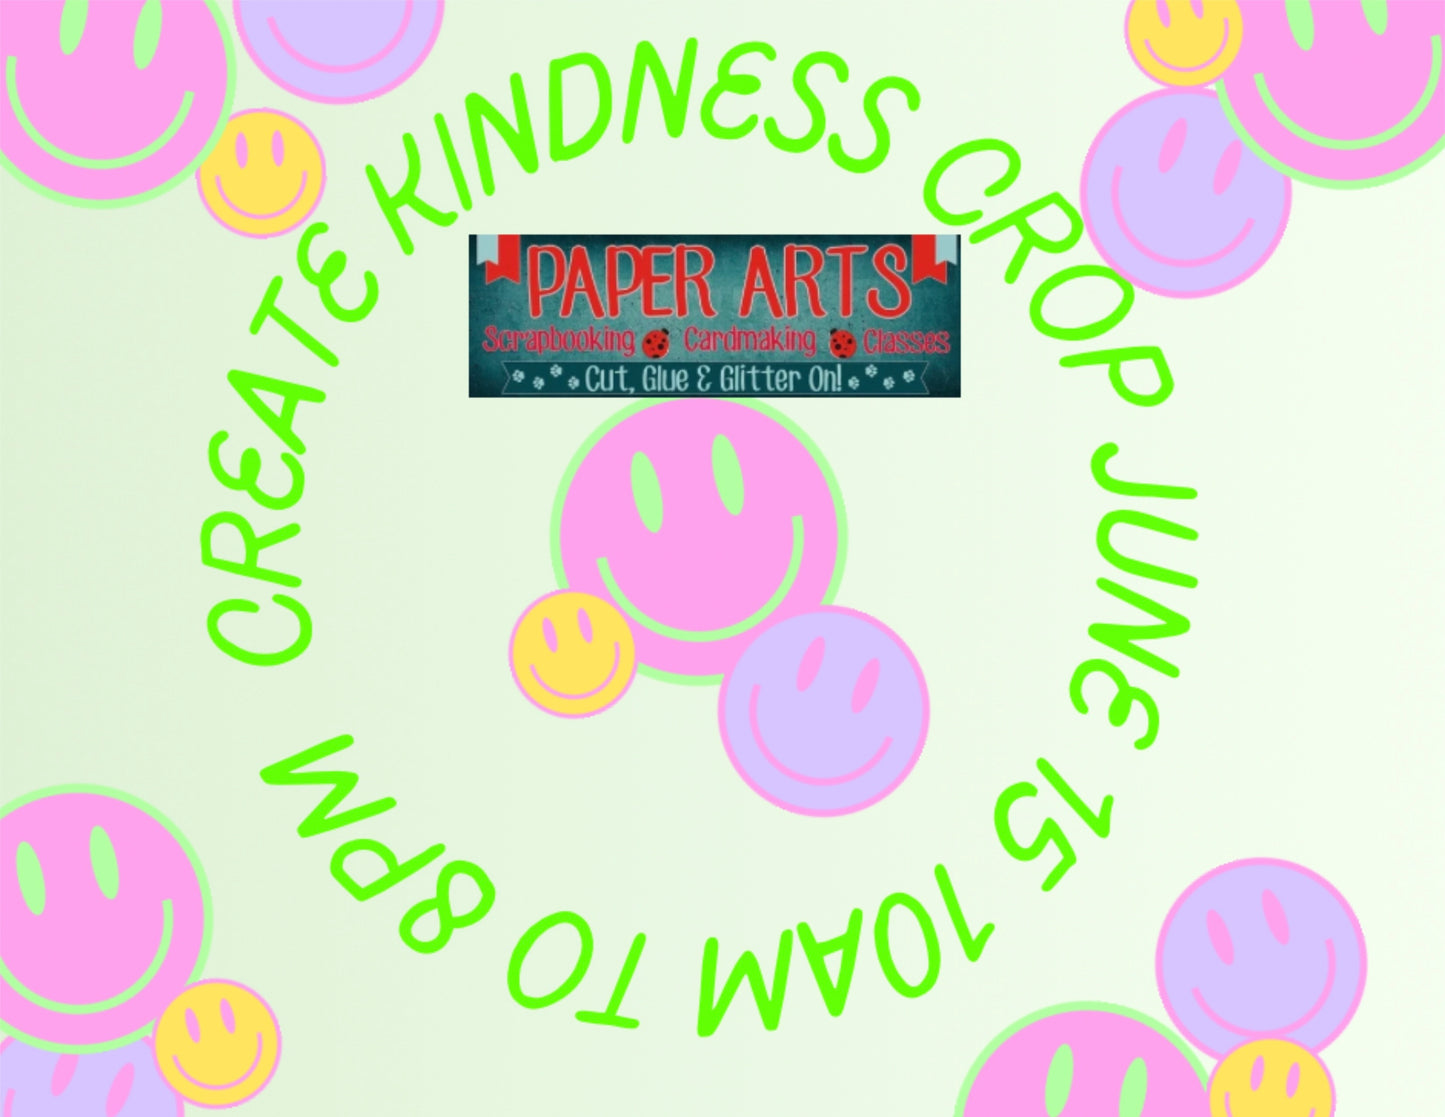 Create Kindness Crop June 15 10am $25